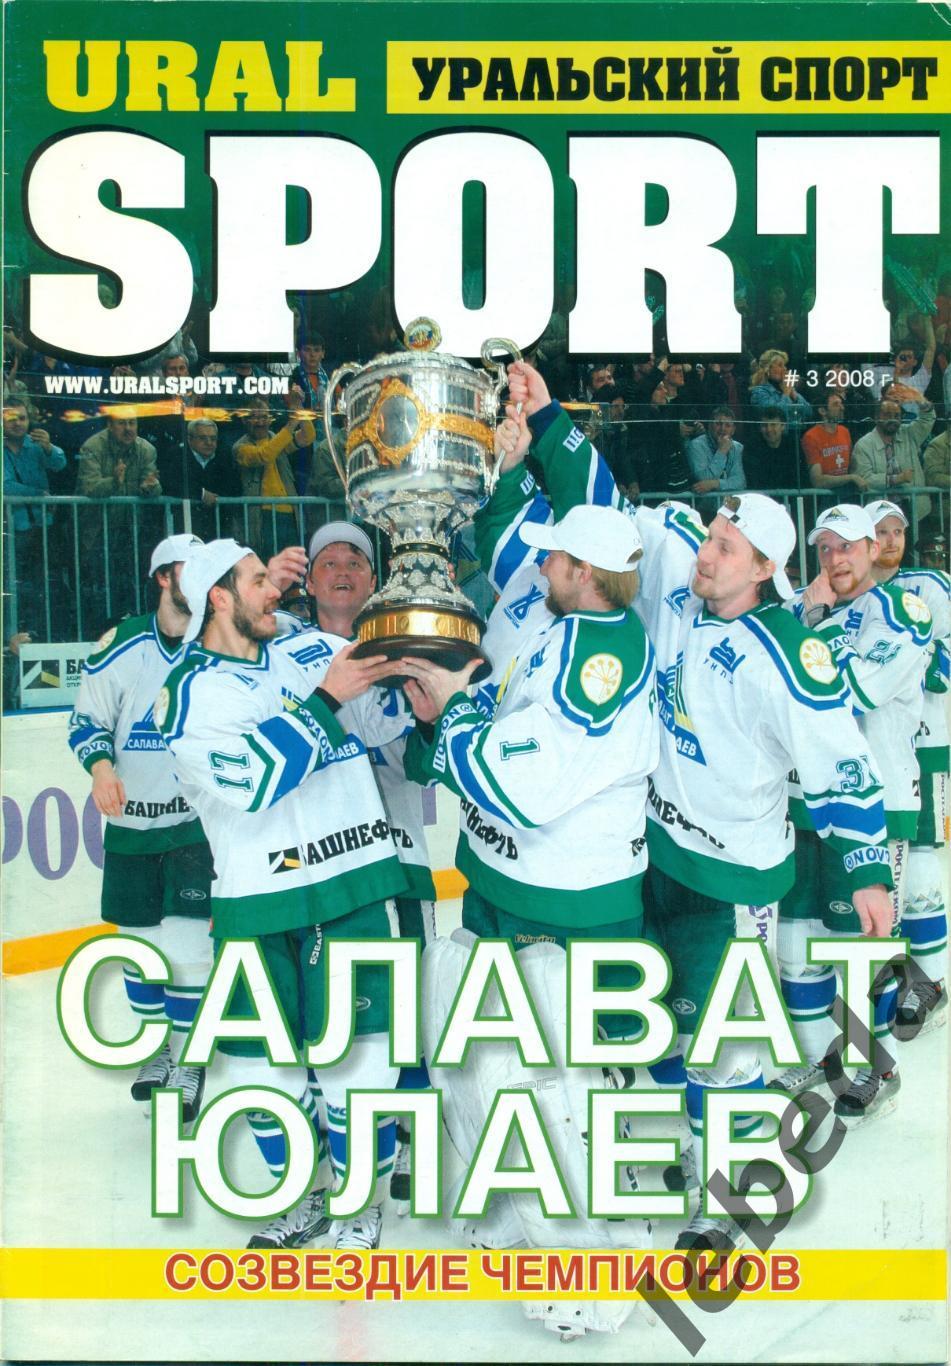 Урал Спорт -2008 г. (Уфа - СЮ созвездие чемпионов.)